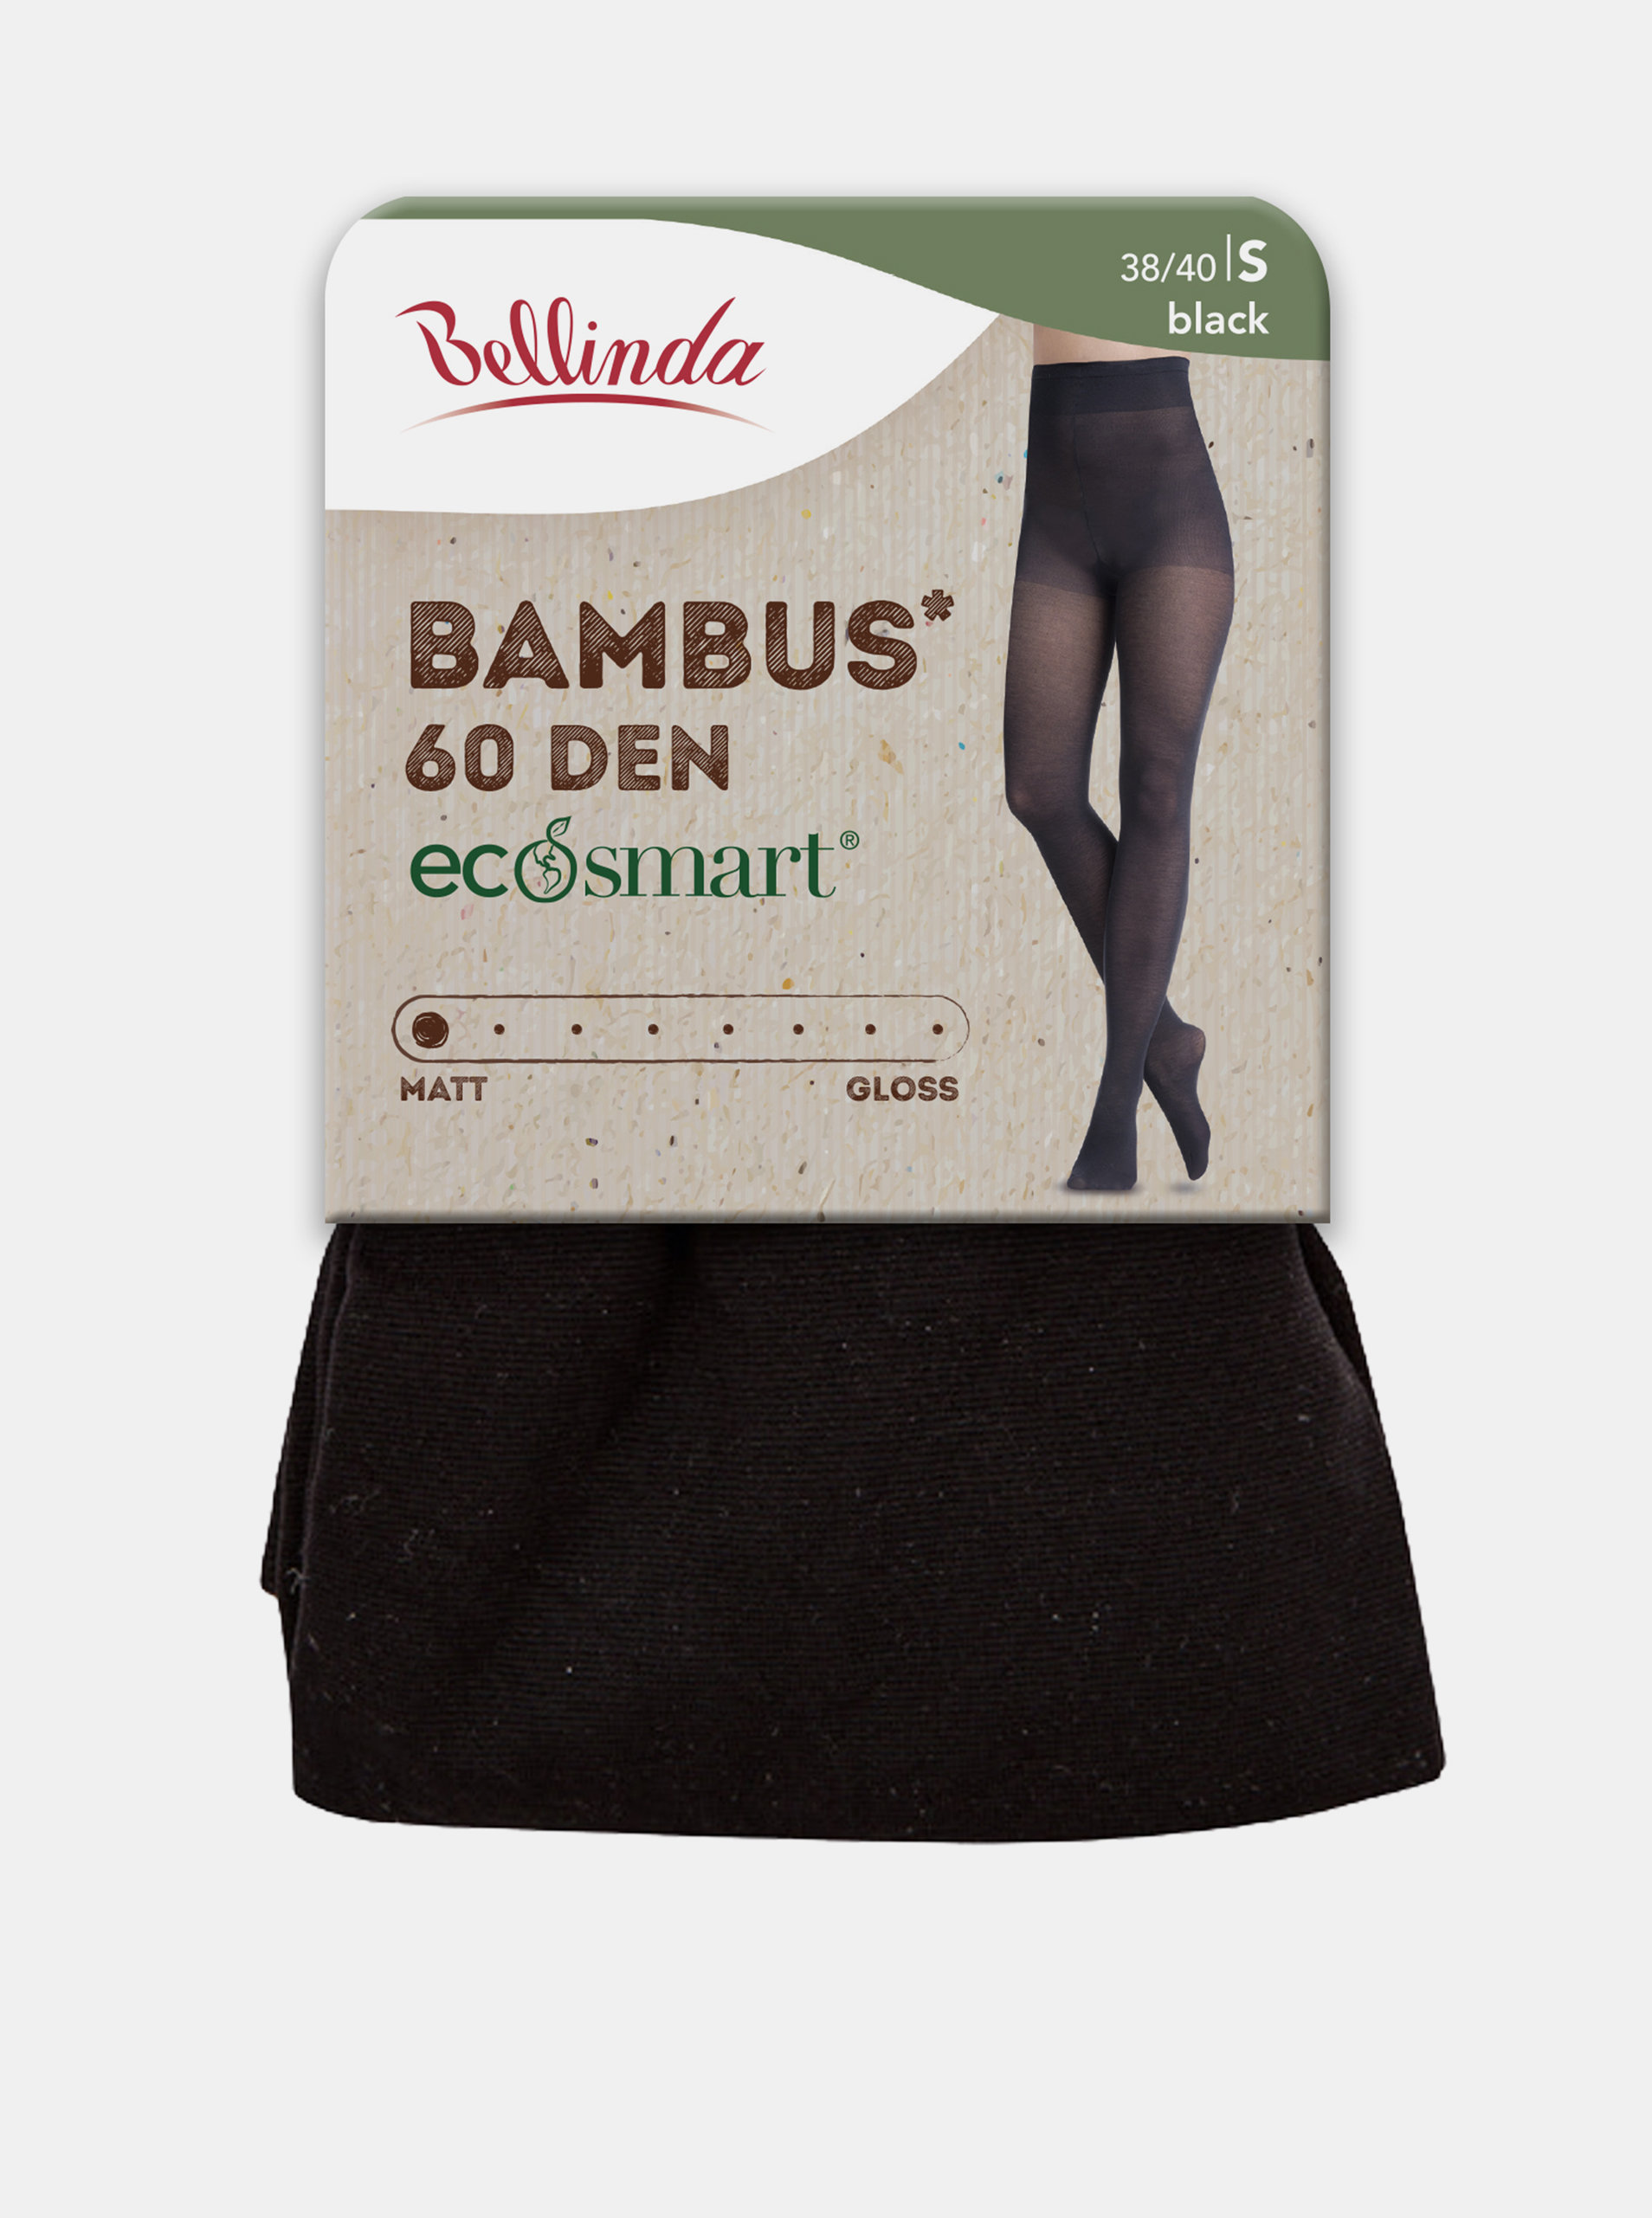 Fotografie Ekologické bambusové punčochové kalhoty ECOSMART BAMBUS 60 DEN - Dámské bambusové punčochy - černá